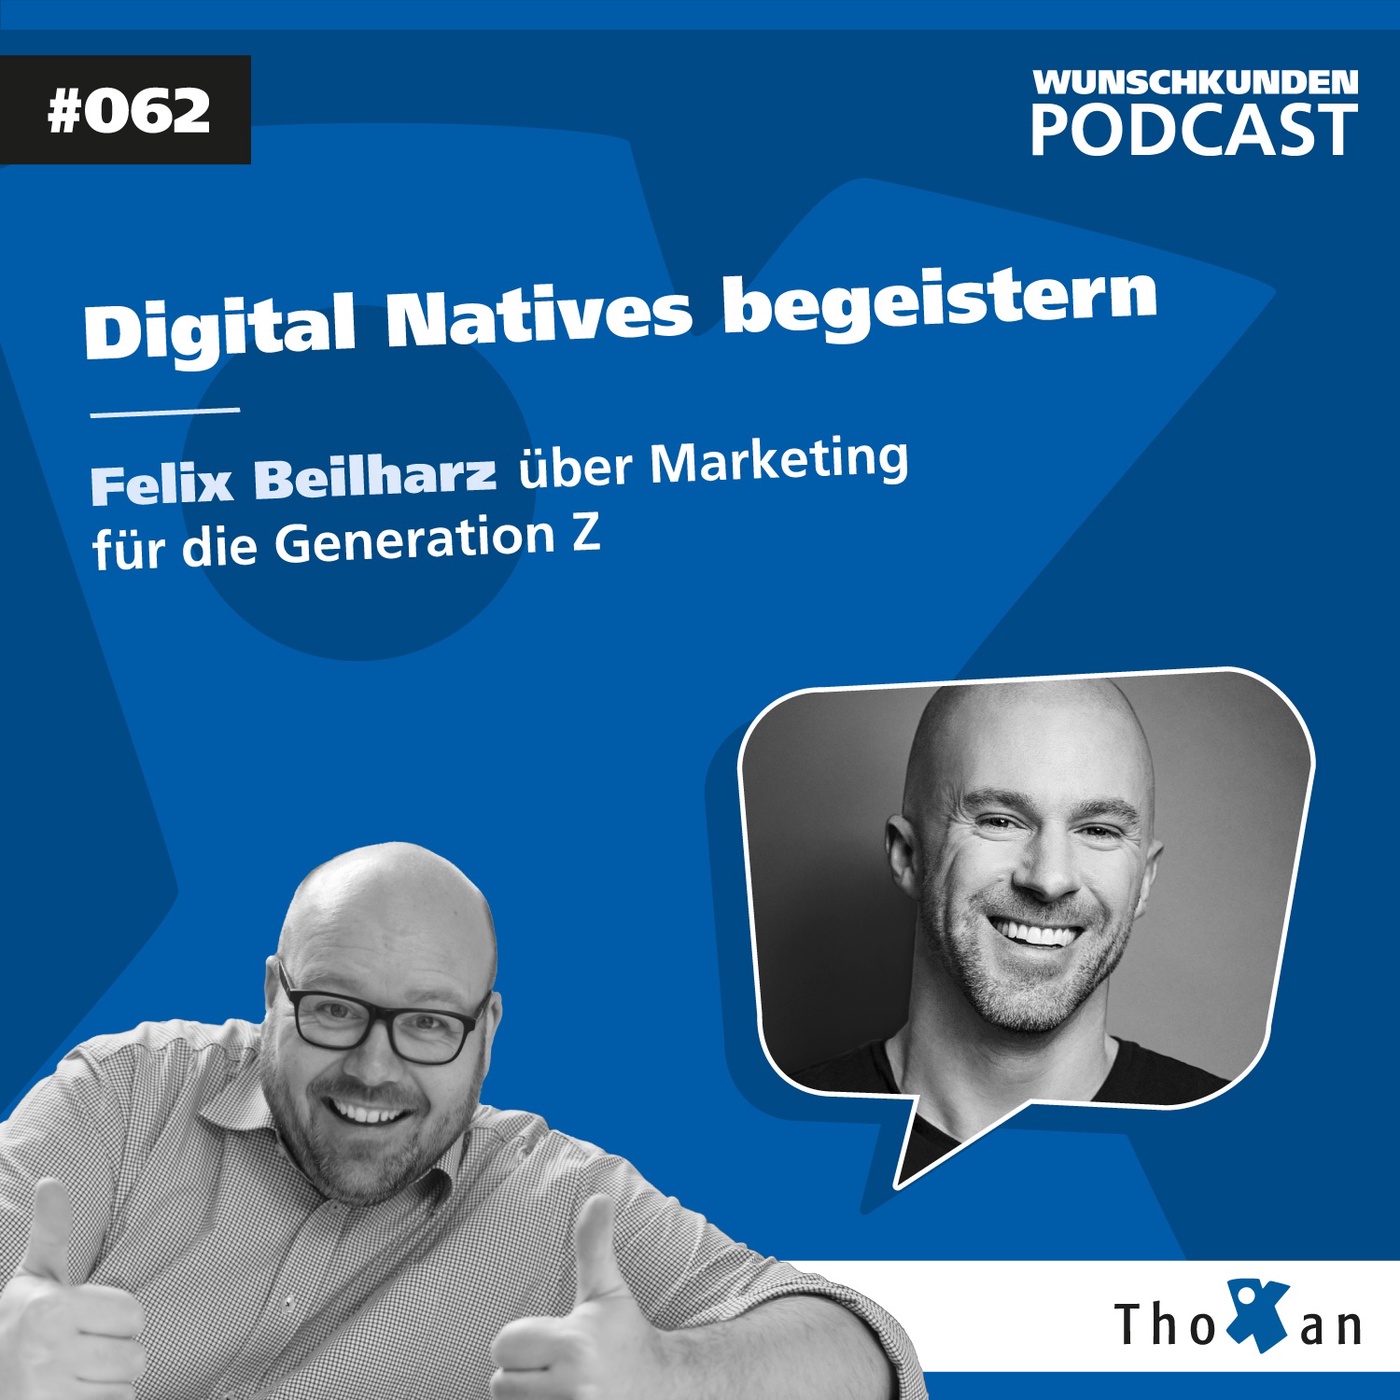 Digital Natives begeistern: Felix Beilharz über Marketing für die Generation Z